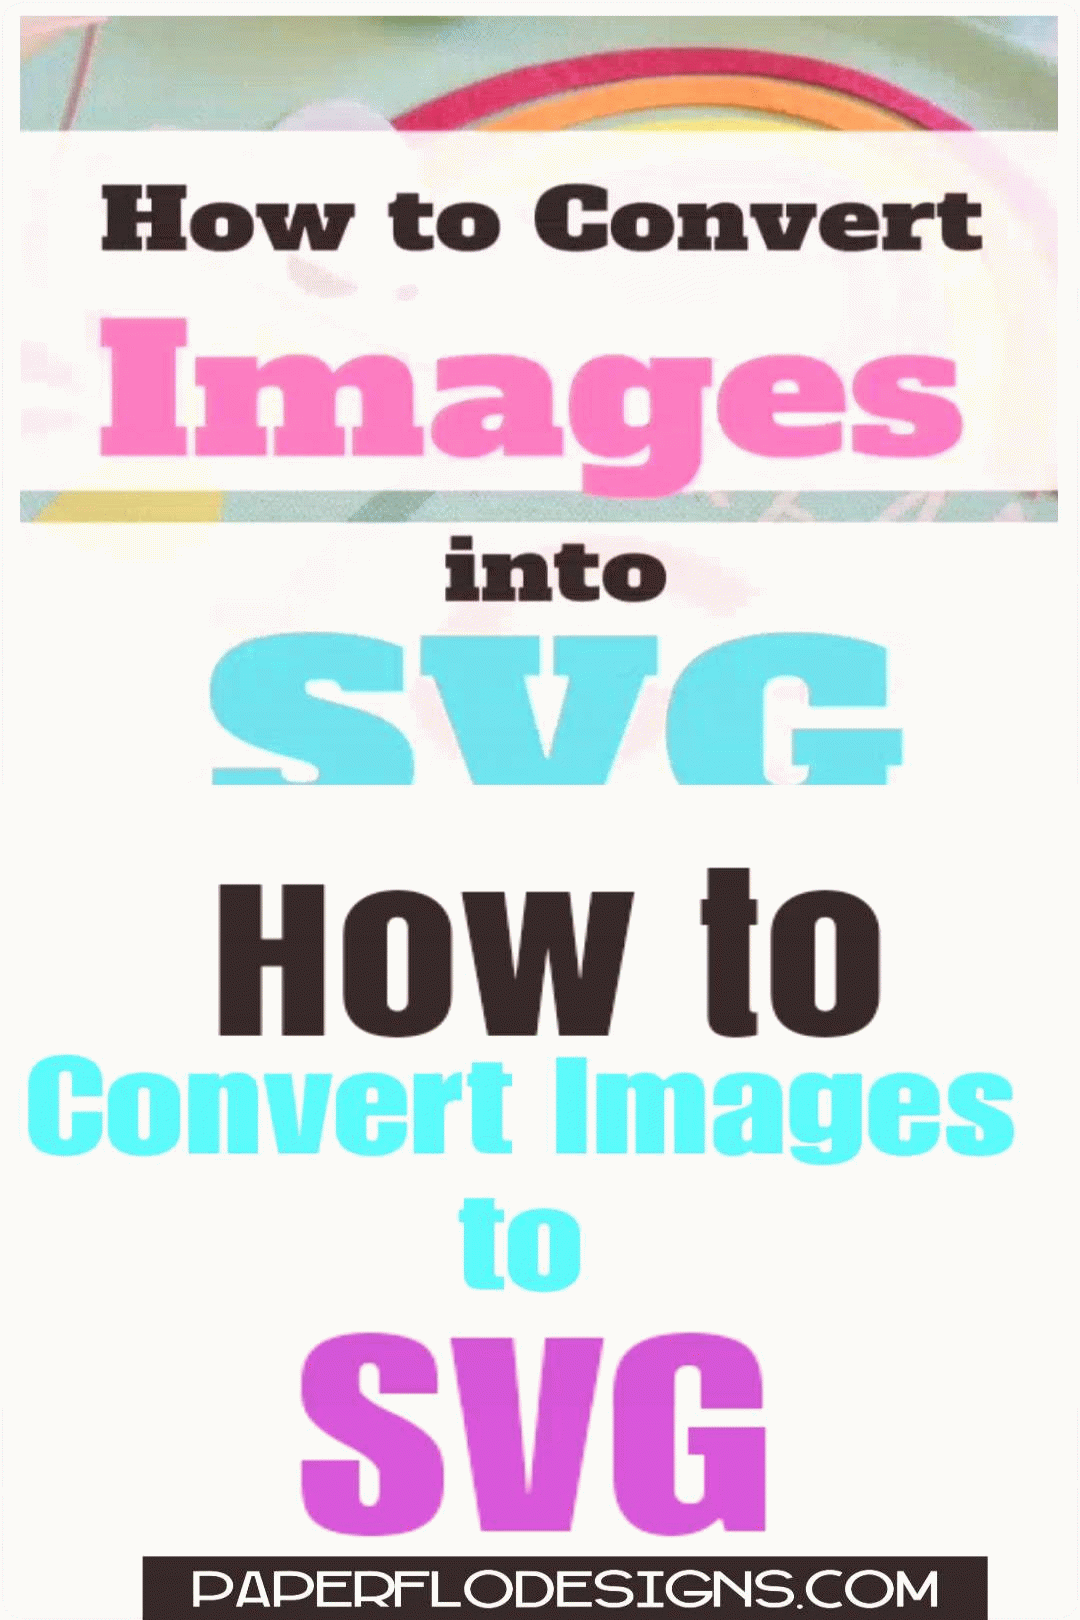 Можете ли вы конвертировать изображения в SVG?